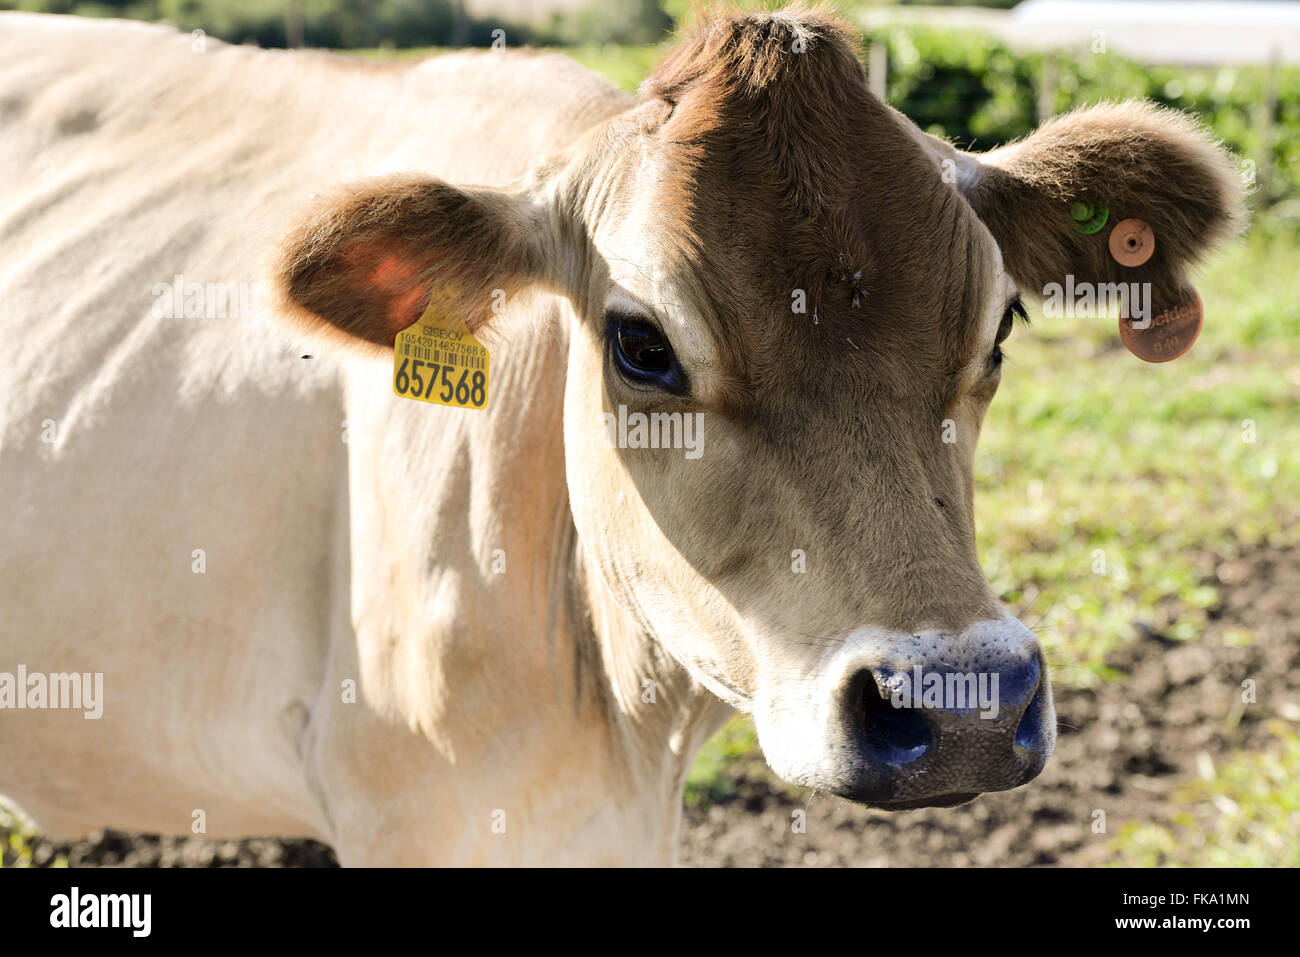 Detalhe de brinco de identificaÁ„o em vaca por cÛdigo de barras Stock Photo  - Alamy